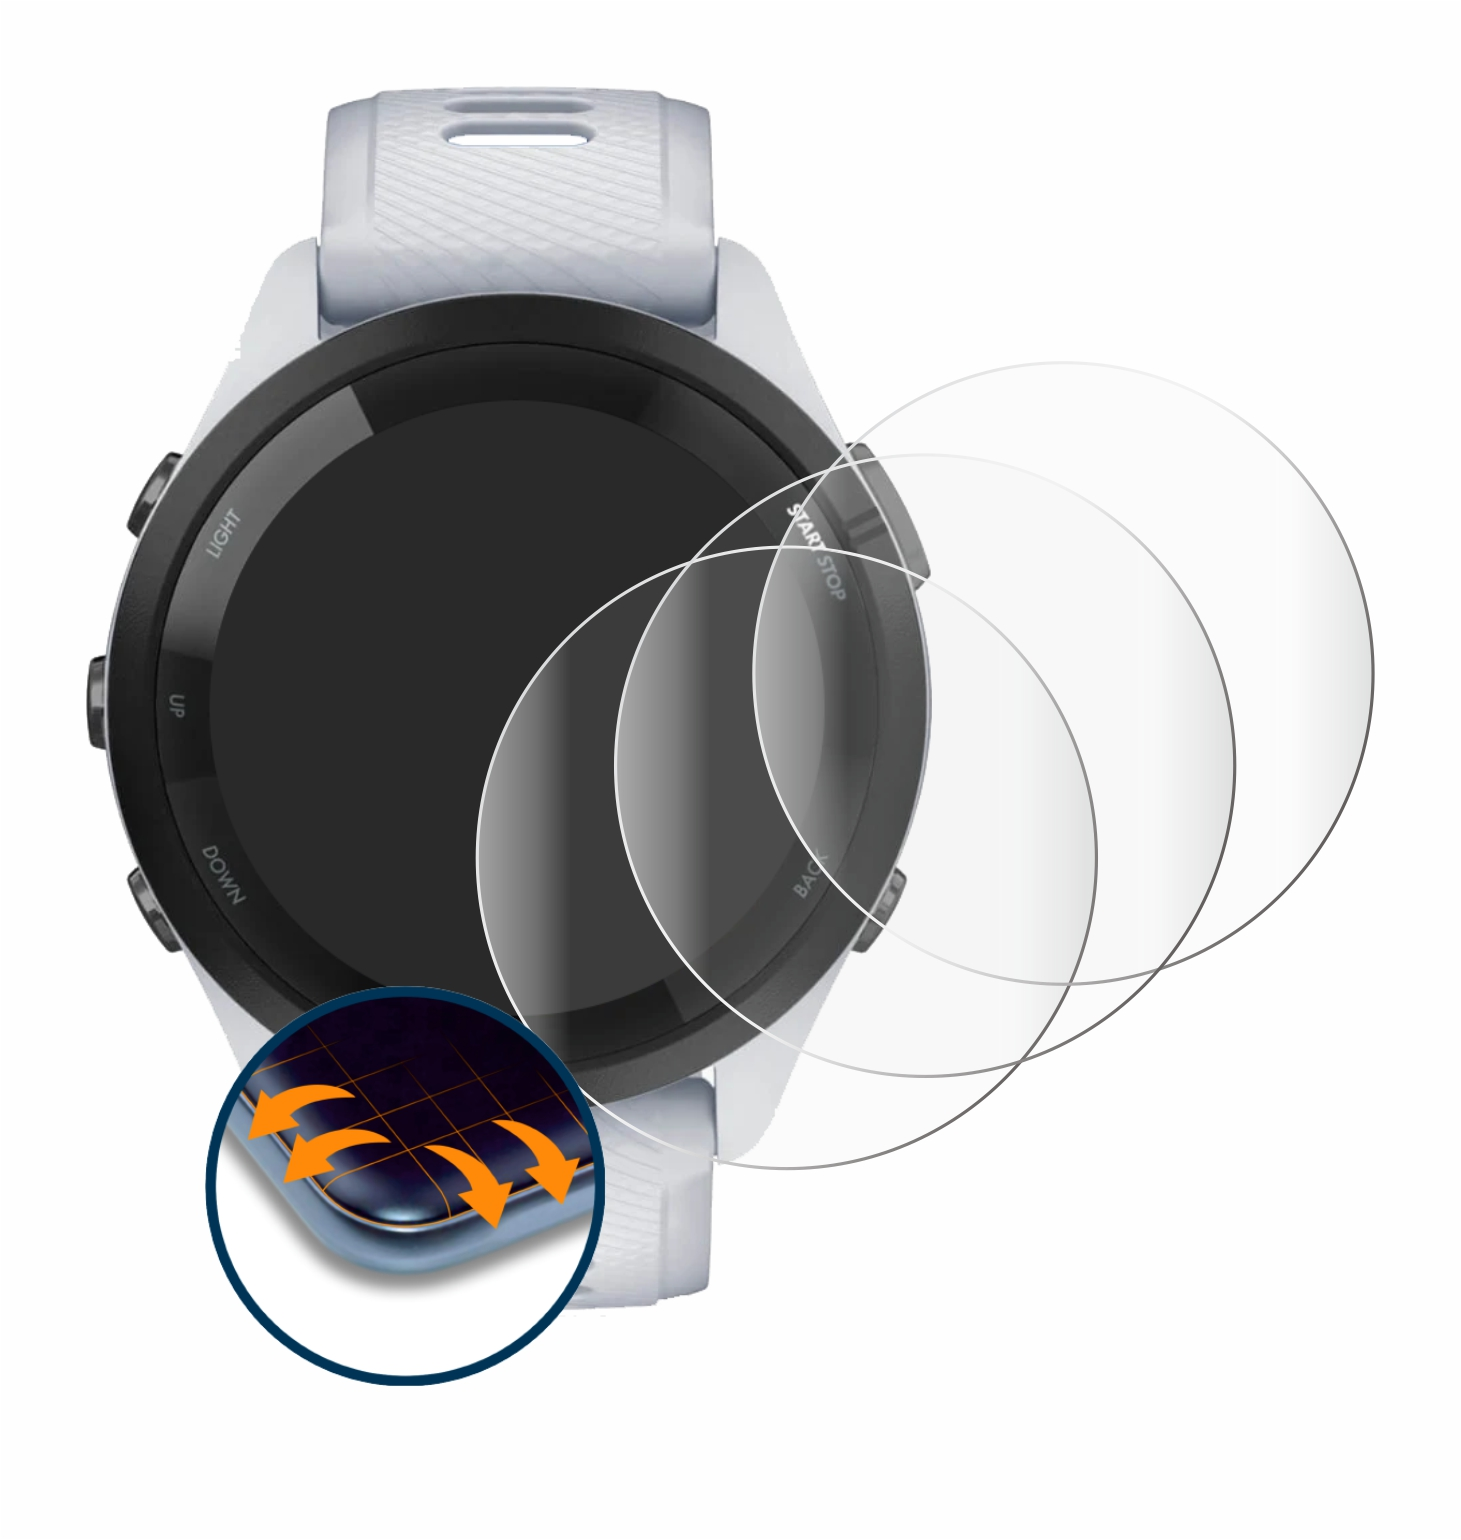 SAVVIES 4x Forerunner Full-Cover (46 Garmin mm)) Flex Schutzfolie(für 3D 265 Curved